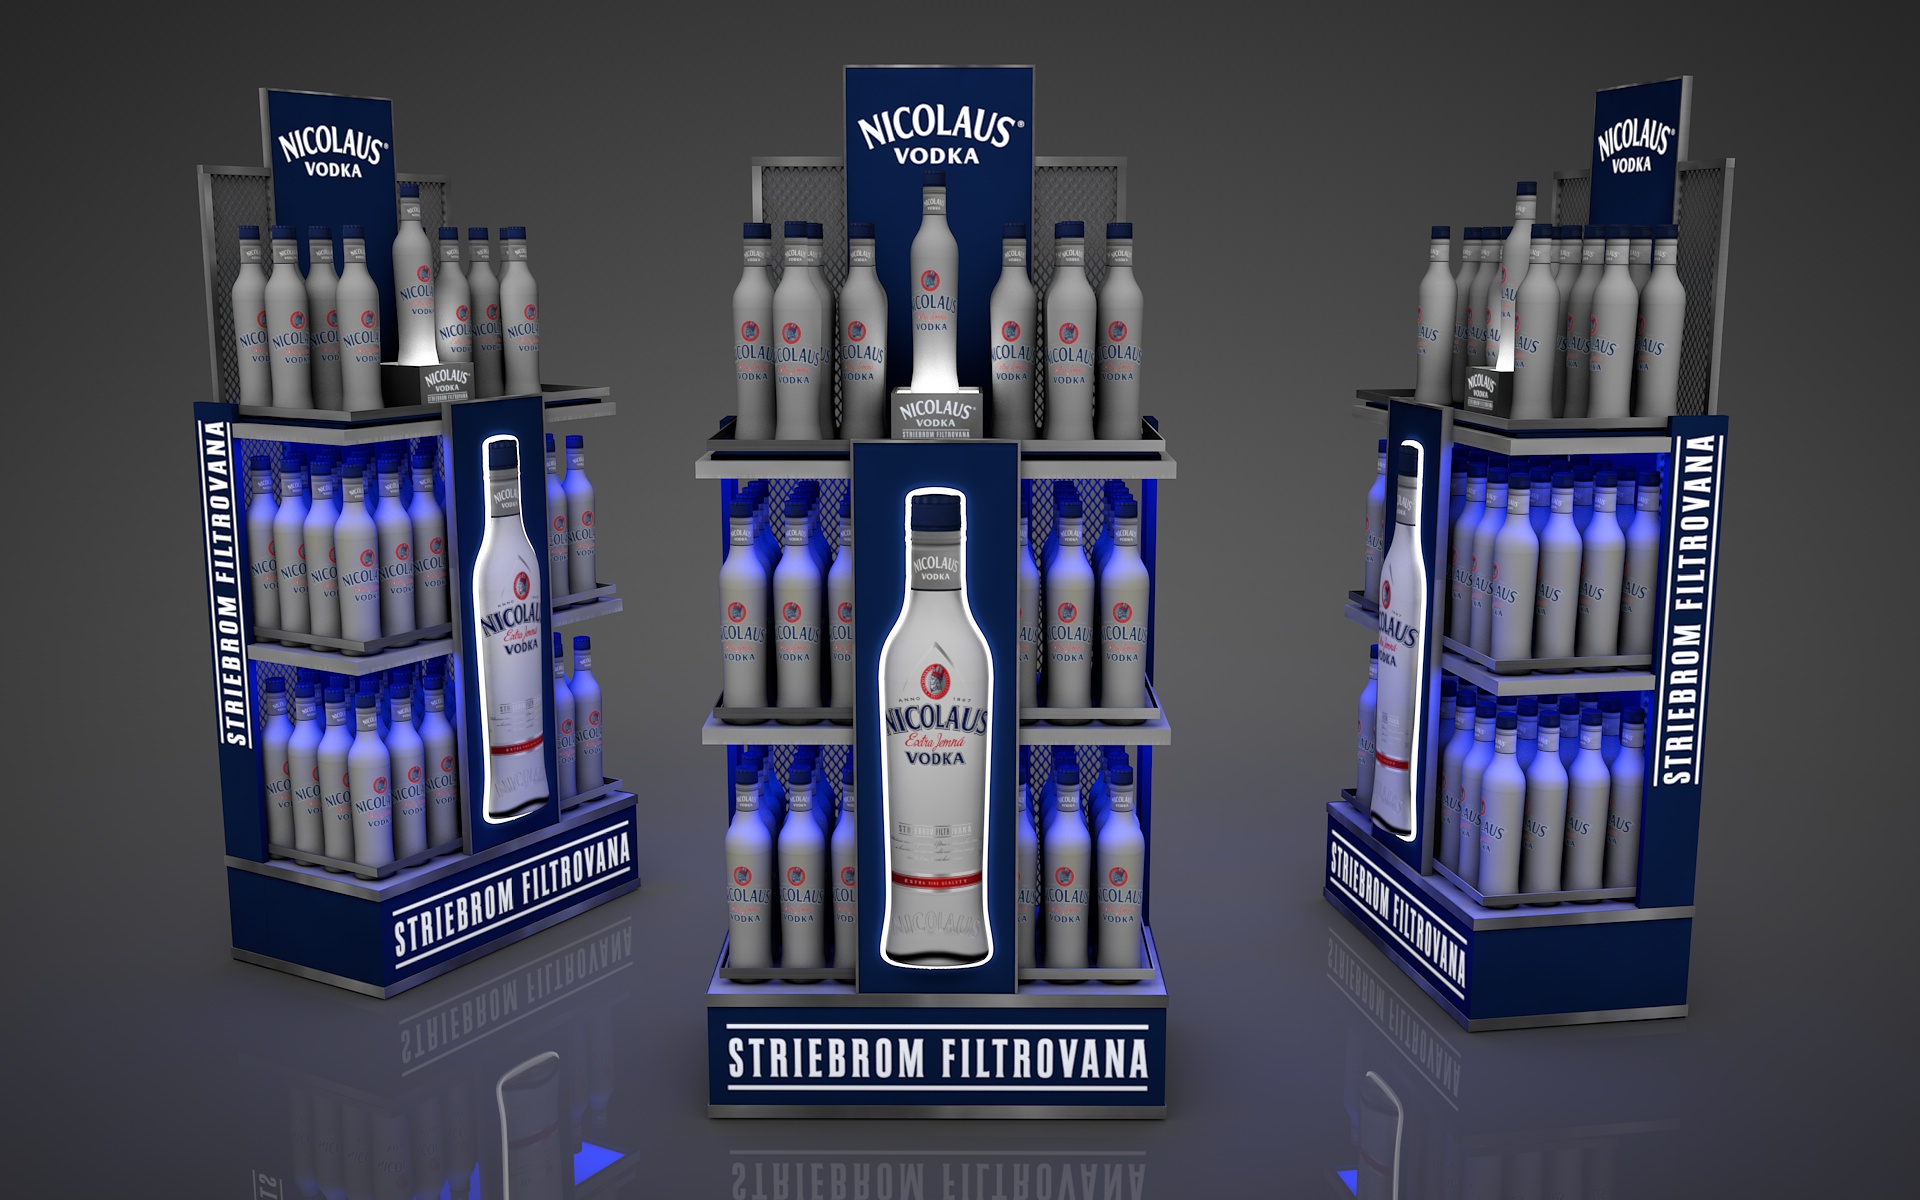 Nicolaus Vodka, regál na striebrom filtrovanú vodku